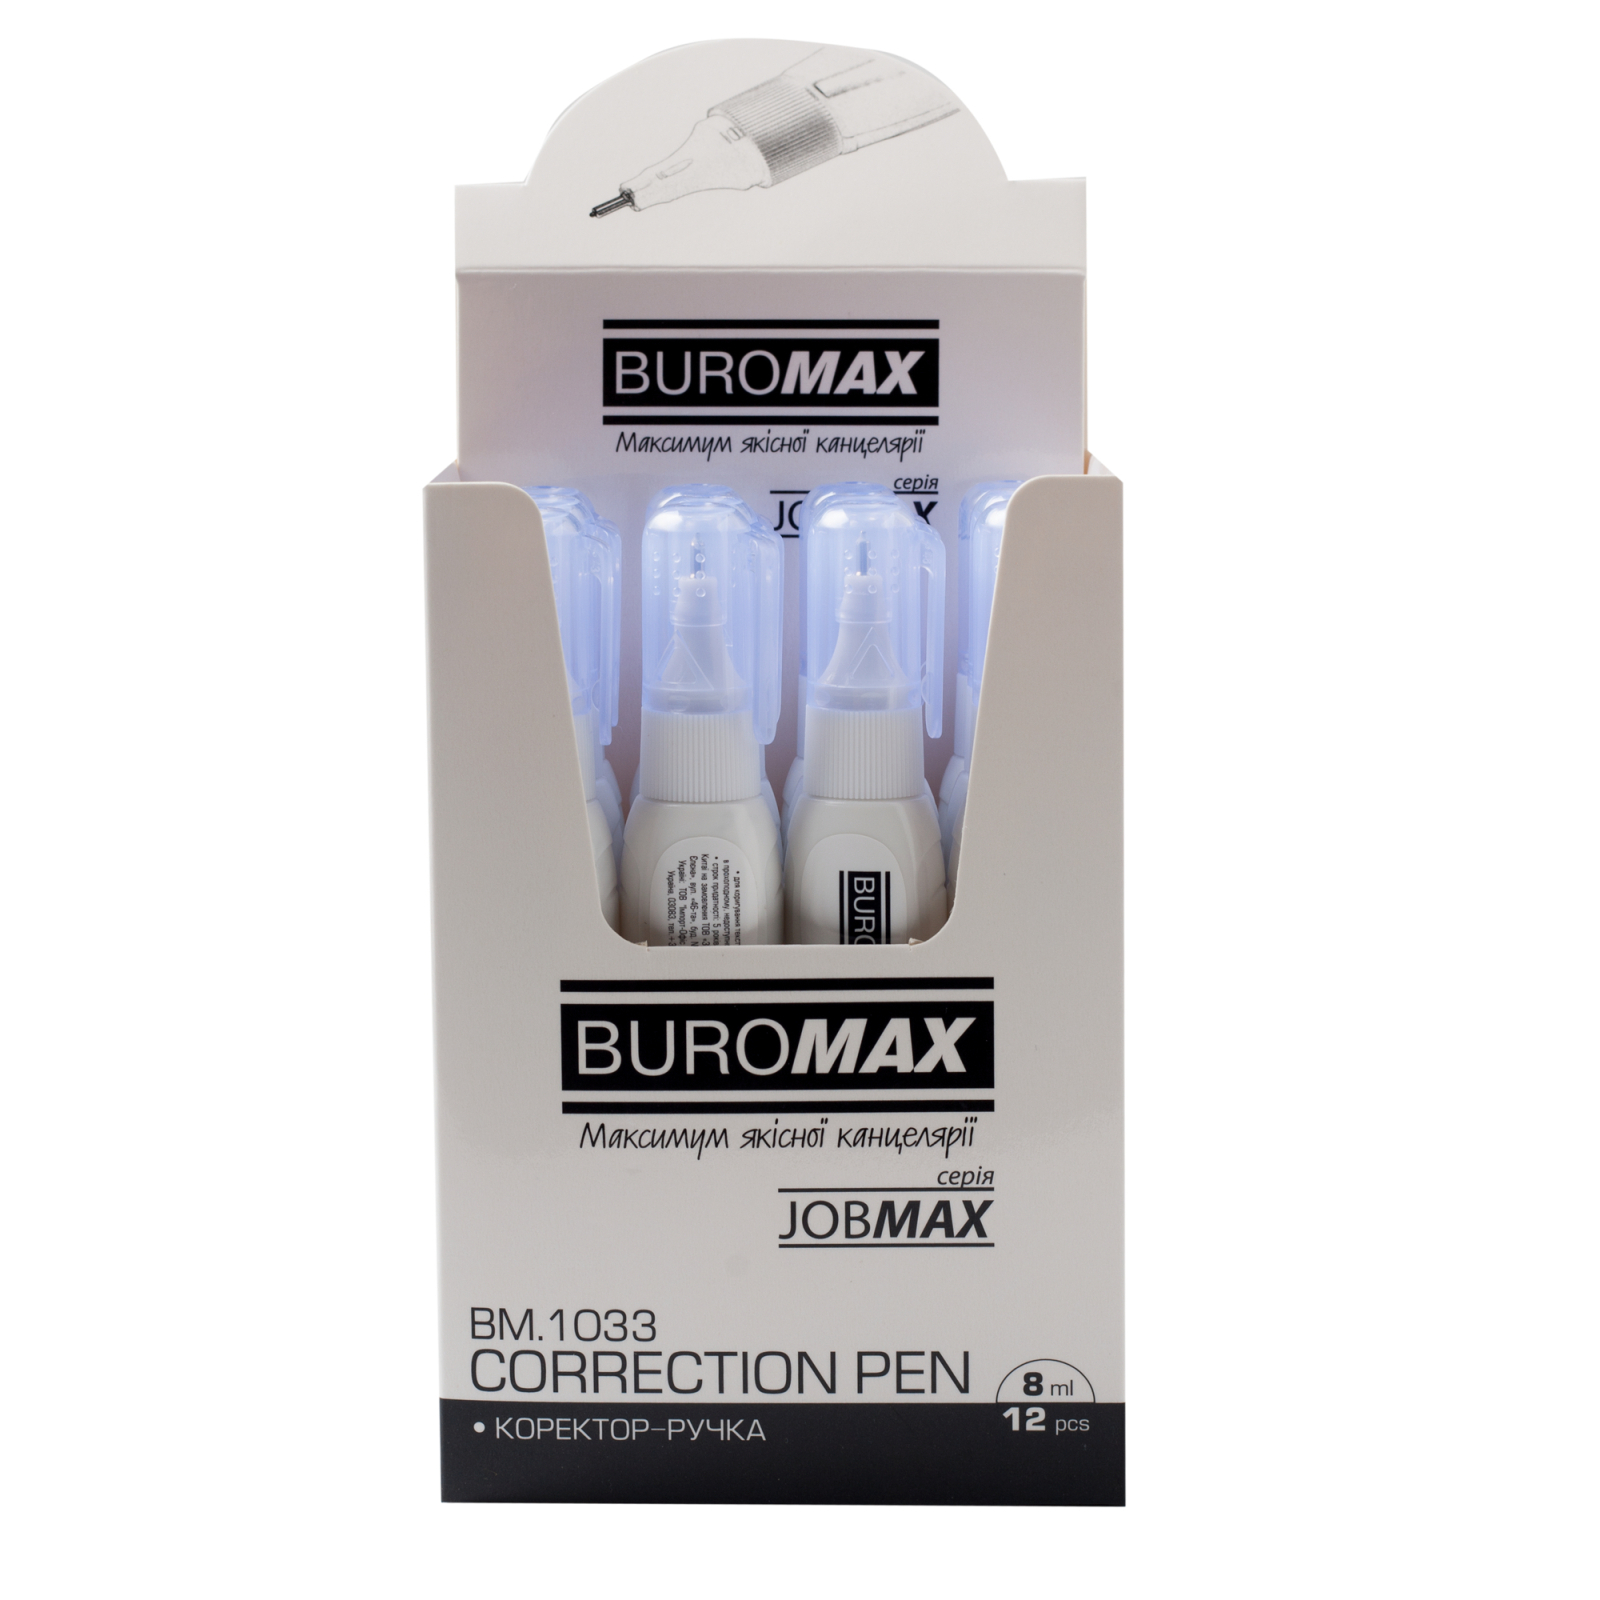 Корректор Buromax ручка 8 мл Jobmax, спиртовая основа, металлический наконечник (BM.1033) изображение 3